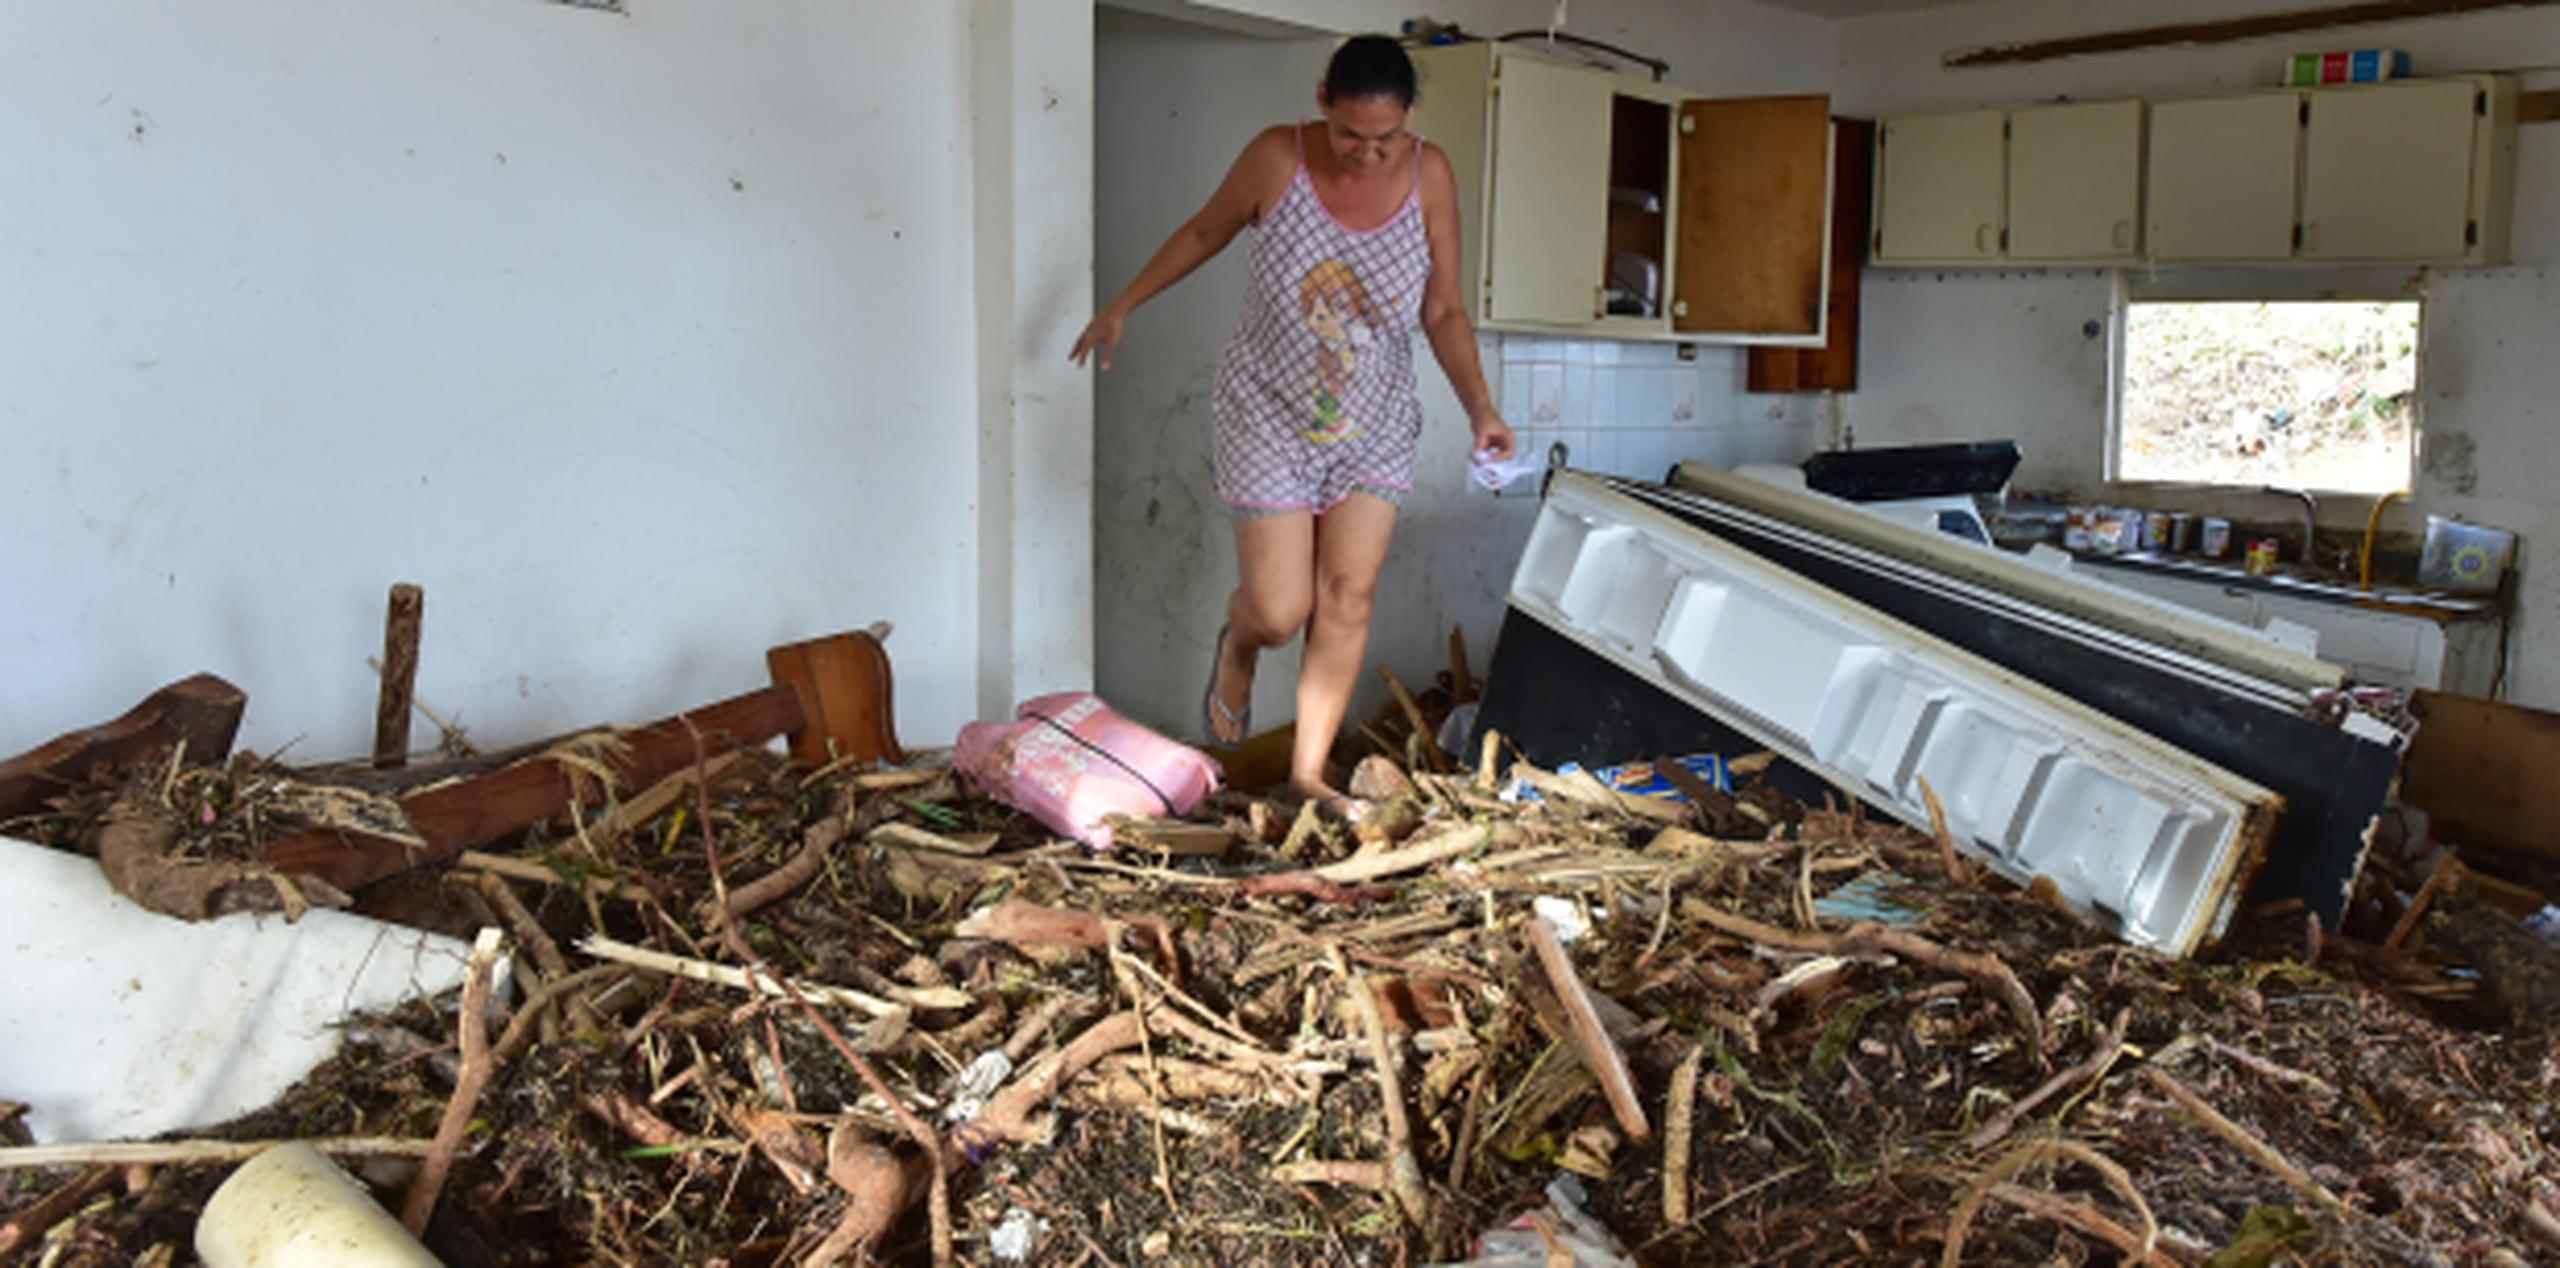 Cantero Mangual contó que pasó el huracán en la residencia de una hermana. (luis.alcaladelolmo@gfrmedia.com)